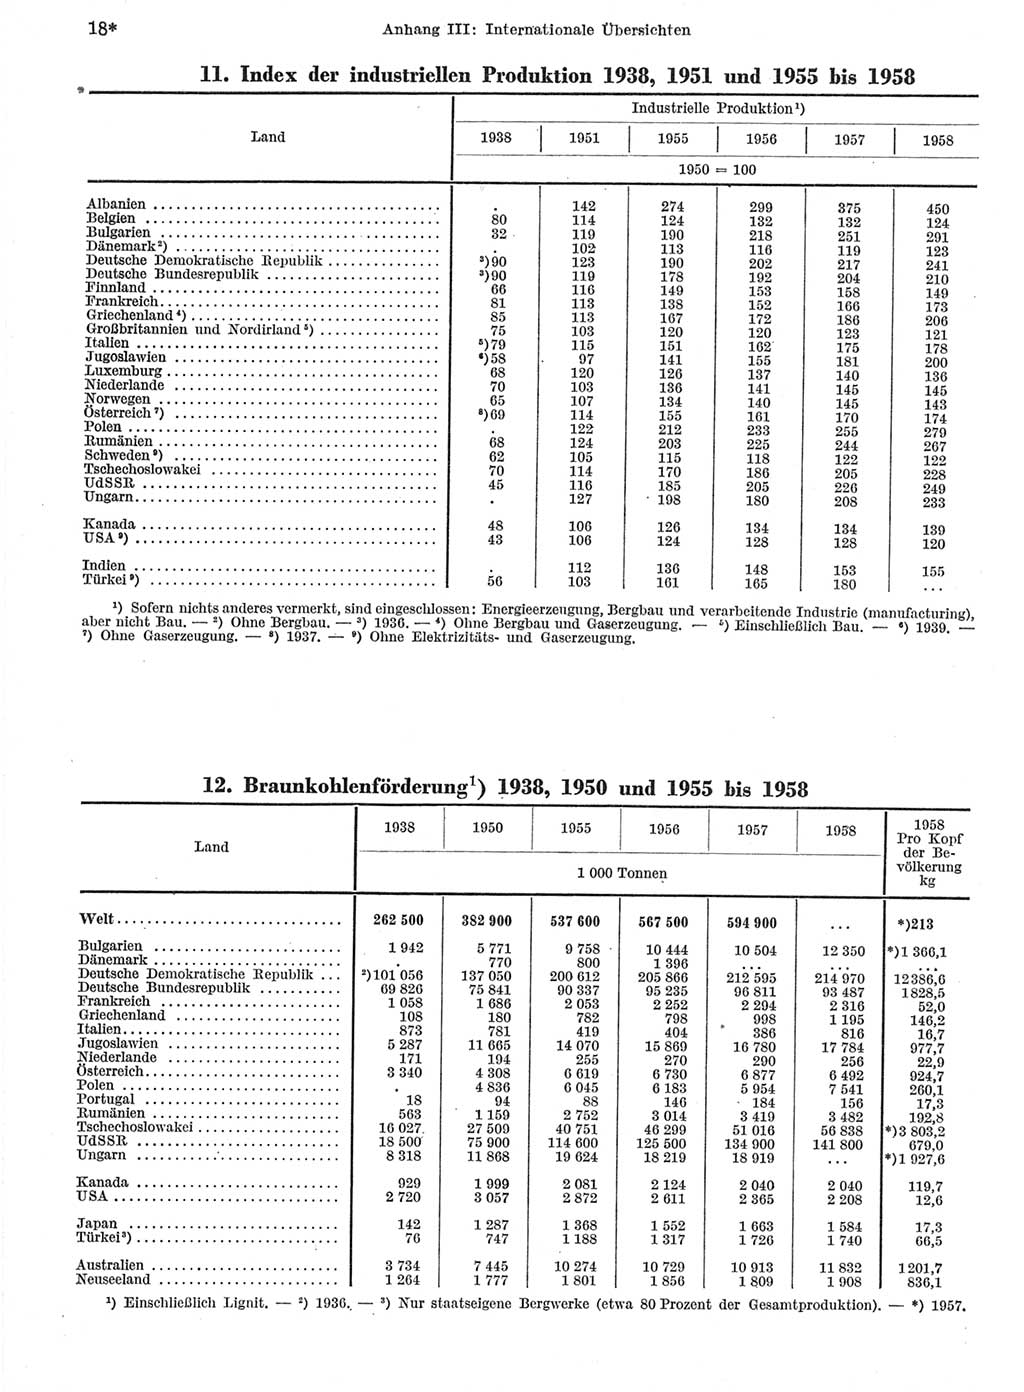 Statistisches Jahrbuch der Deutschen Demokratischen Republik (DDR) 1959, Seite 18 (Stat. Jb. DDR 1959, S. 18)